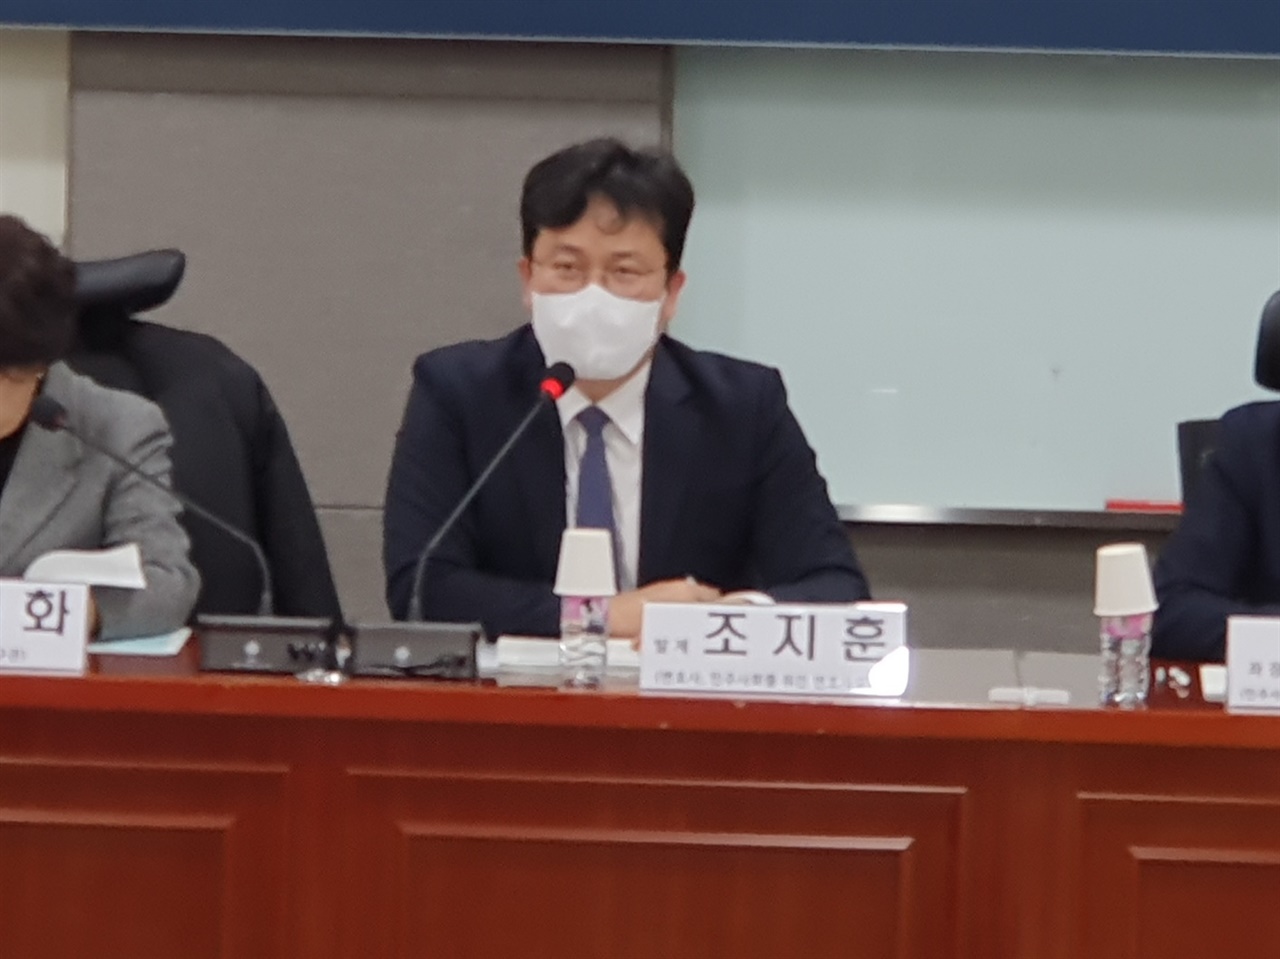 국회의원회관에서 열린 정책 토론회에서 조지훈 변호사(민변)가 주제 발표를  하고 있다.